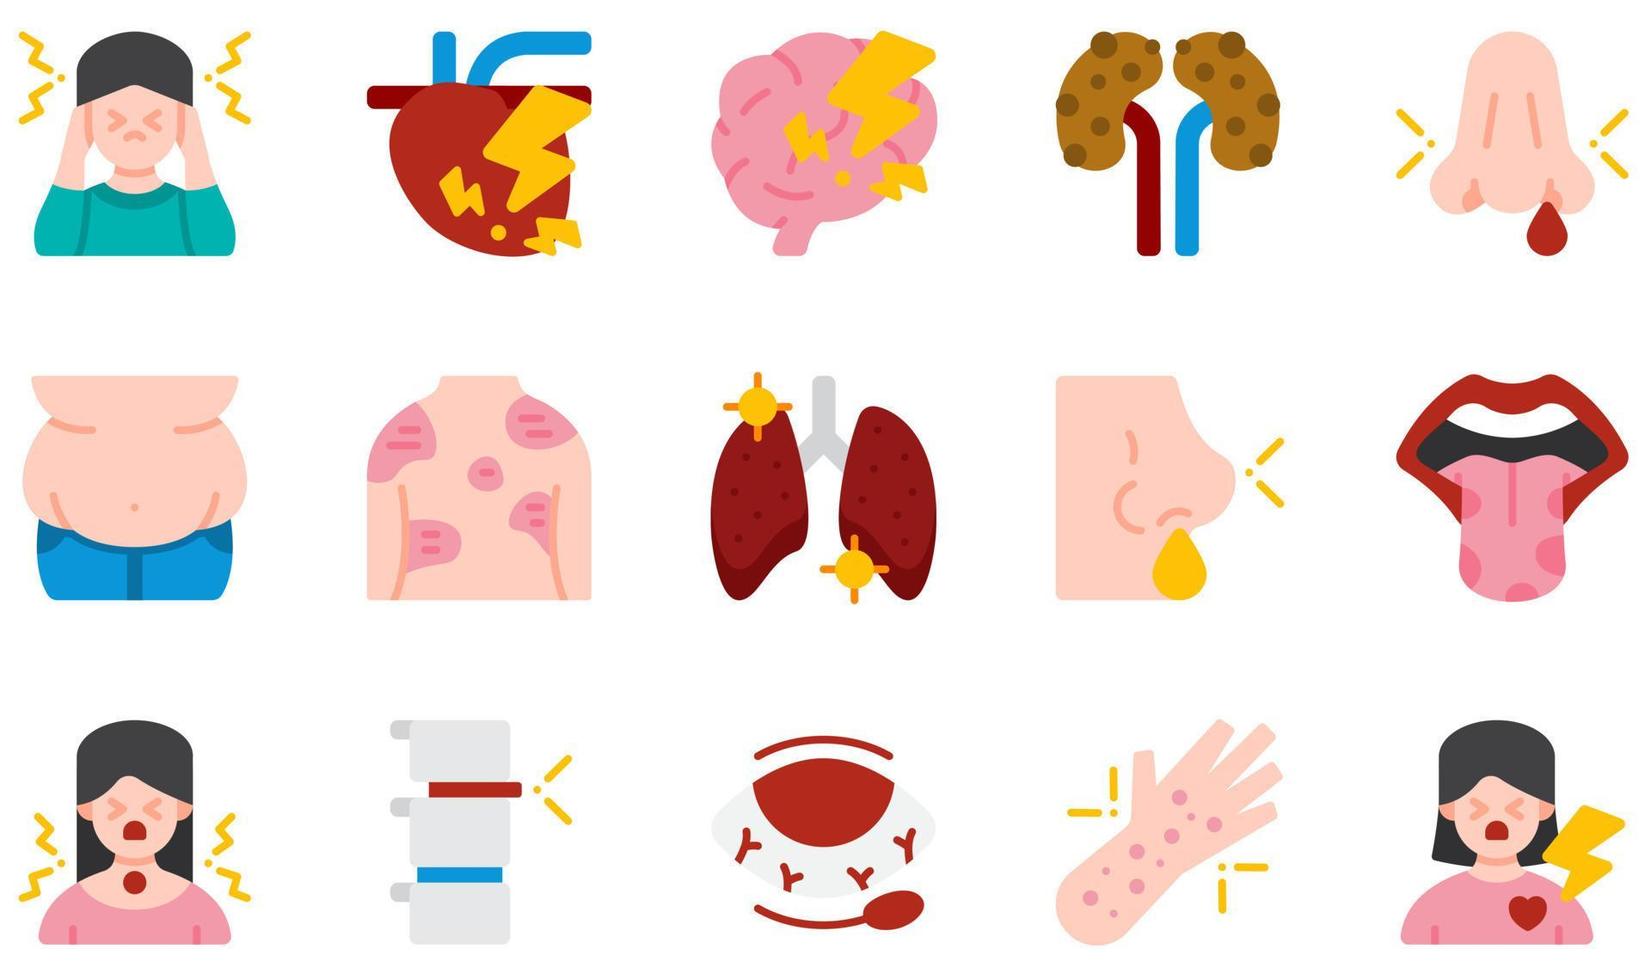 set di icone vettoriali relative alle malattie. contiene icone come reflusso gastrico, glossite, mal di testa, malattie cardiache, obesità, hordeolum e altro ancora.